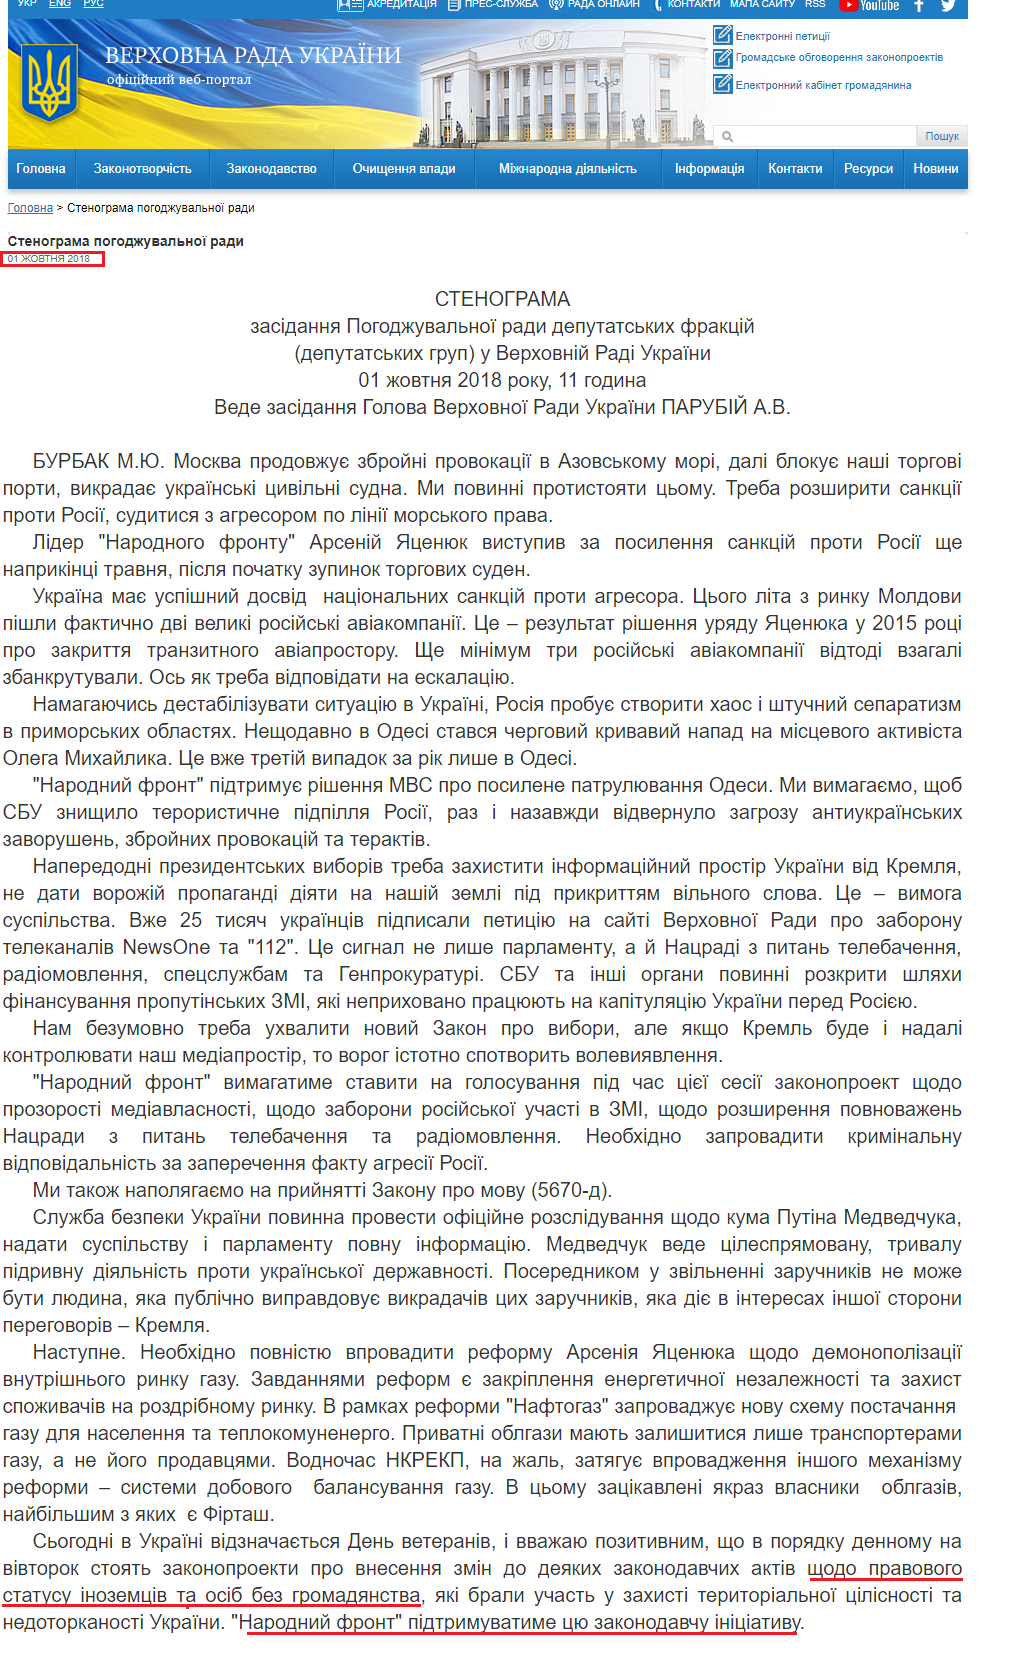 http://iportal.rada.gov.ua/meeting/stenpog/show/6906.html